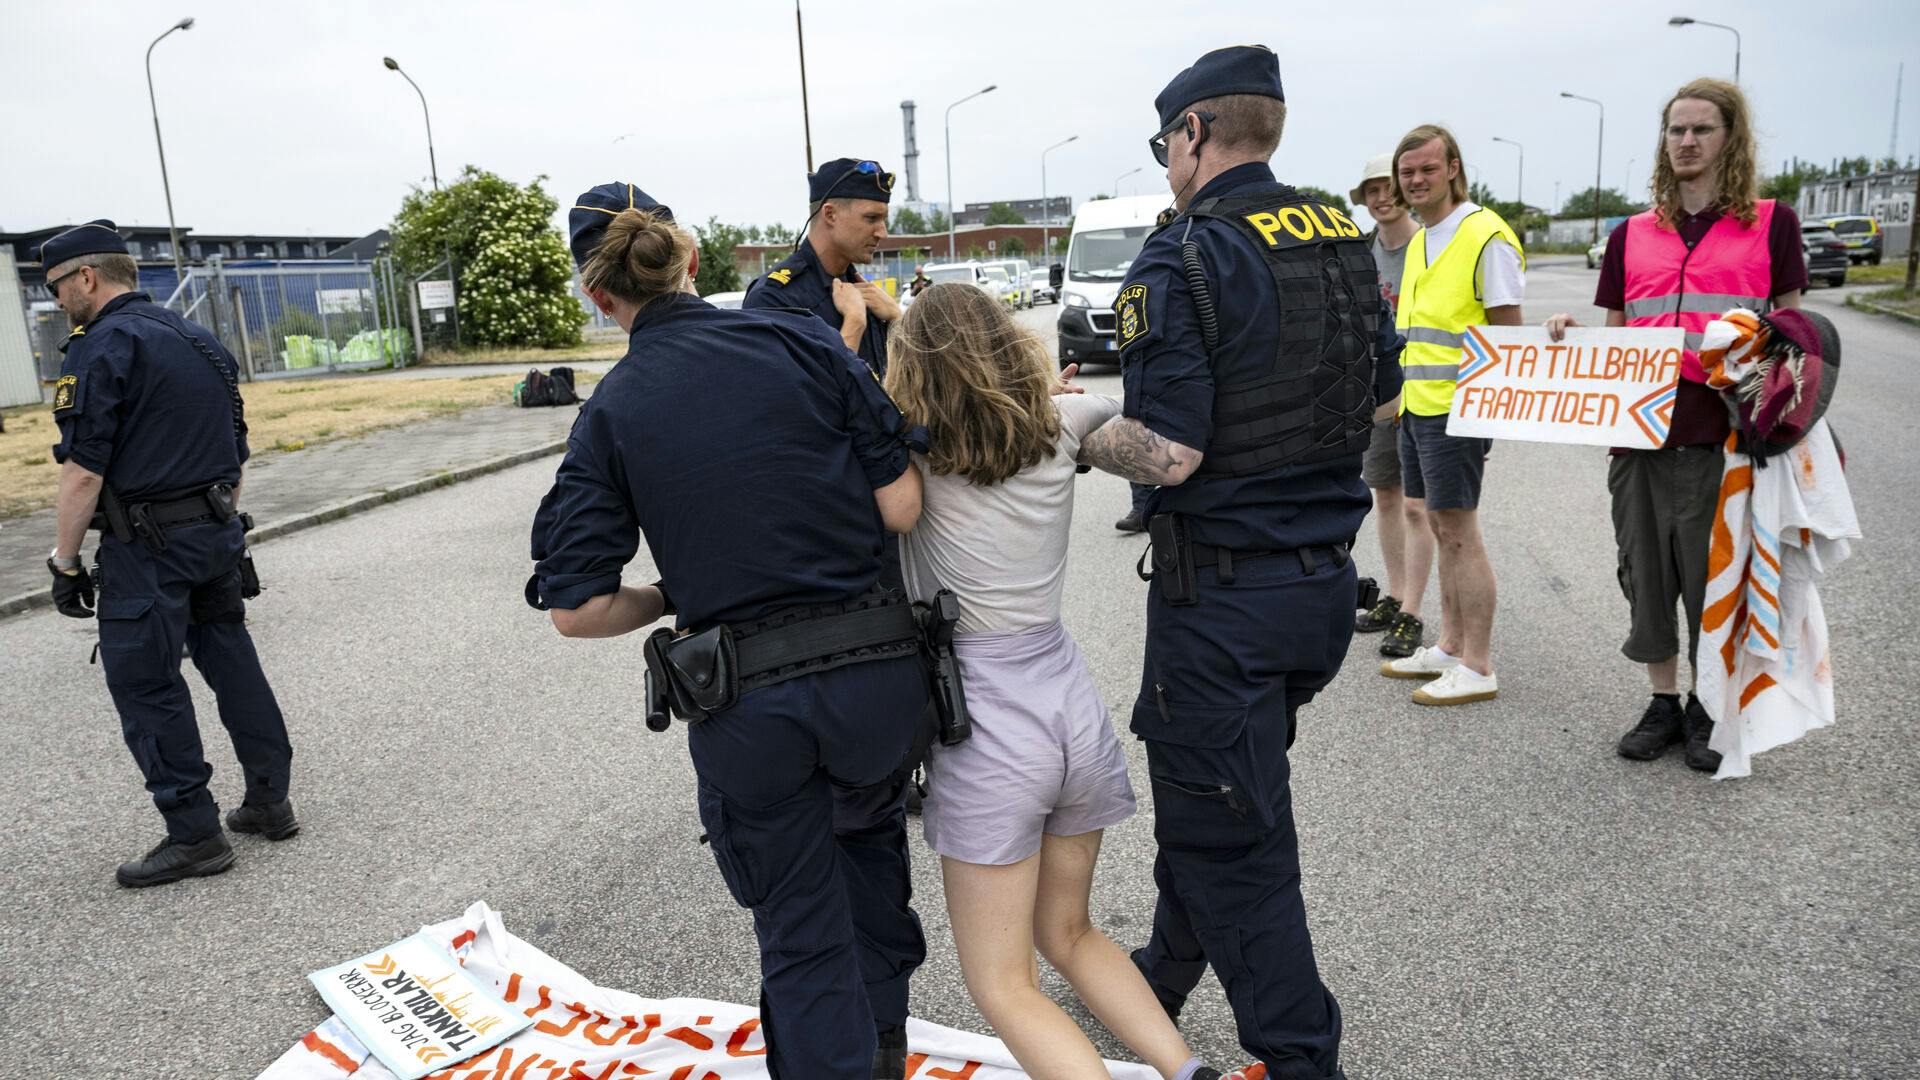 Her slæbes Greta Thunberg væk af politiet. Hendes civile ulydighed har nu kostet den svenske klimaaktivist en bød